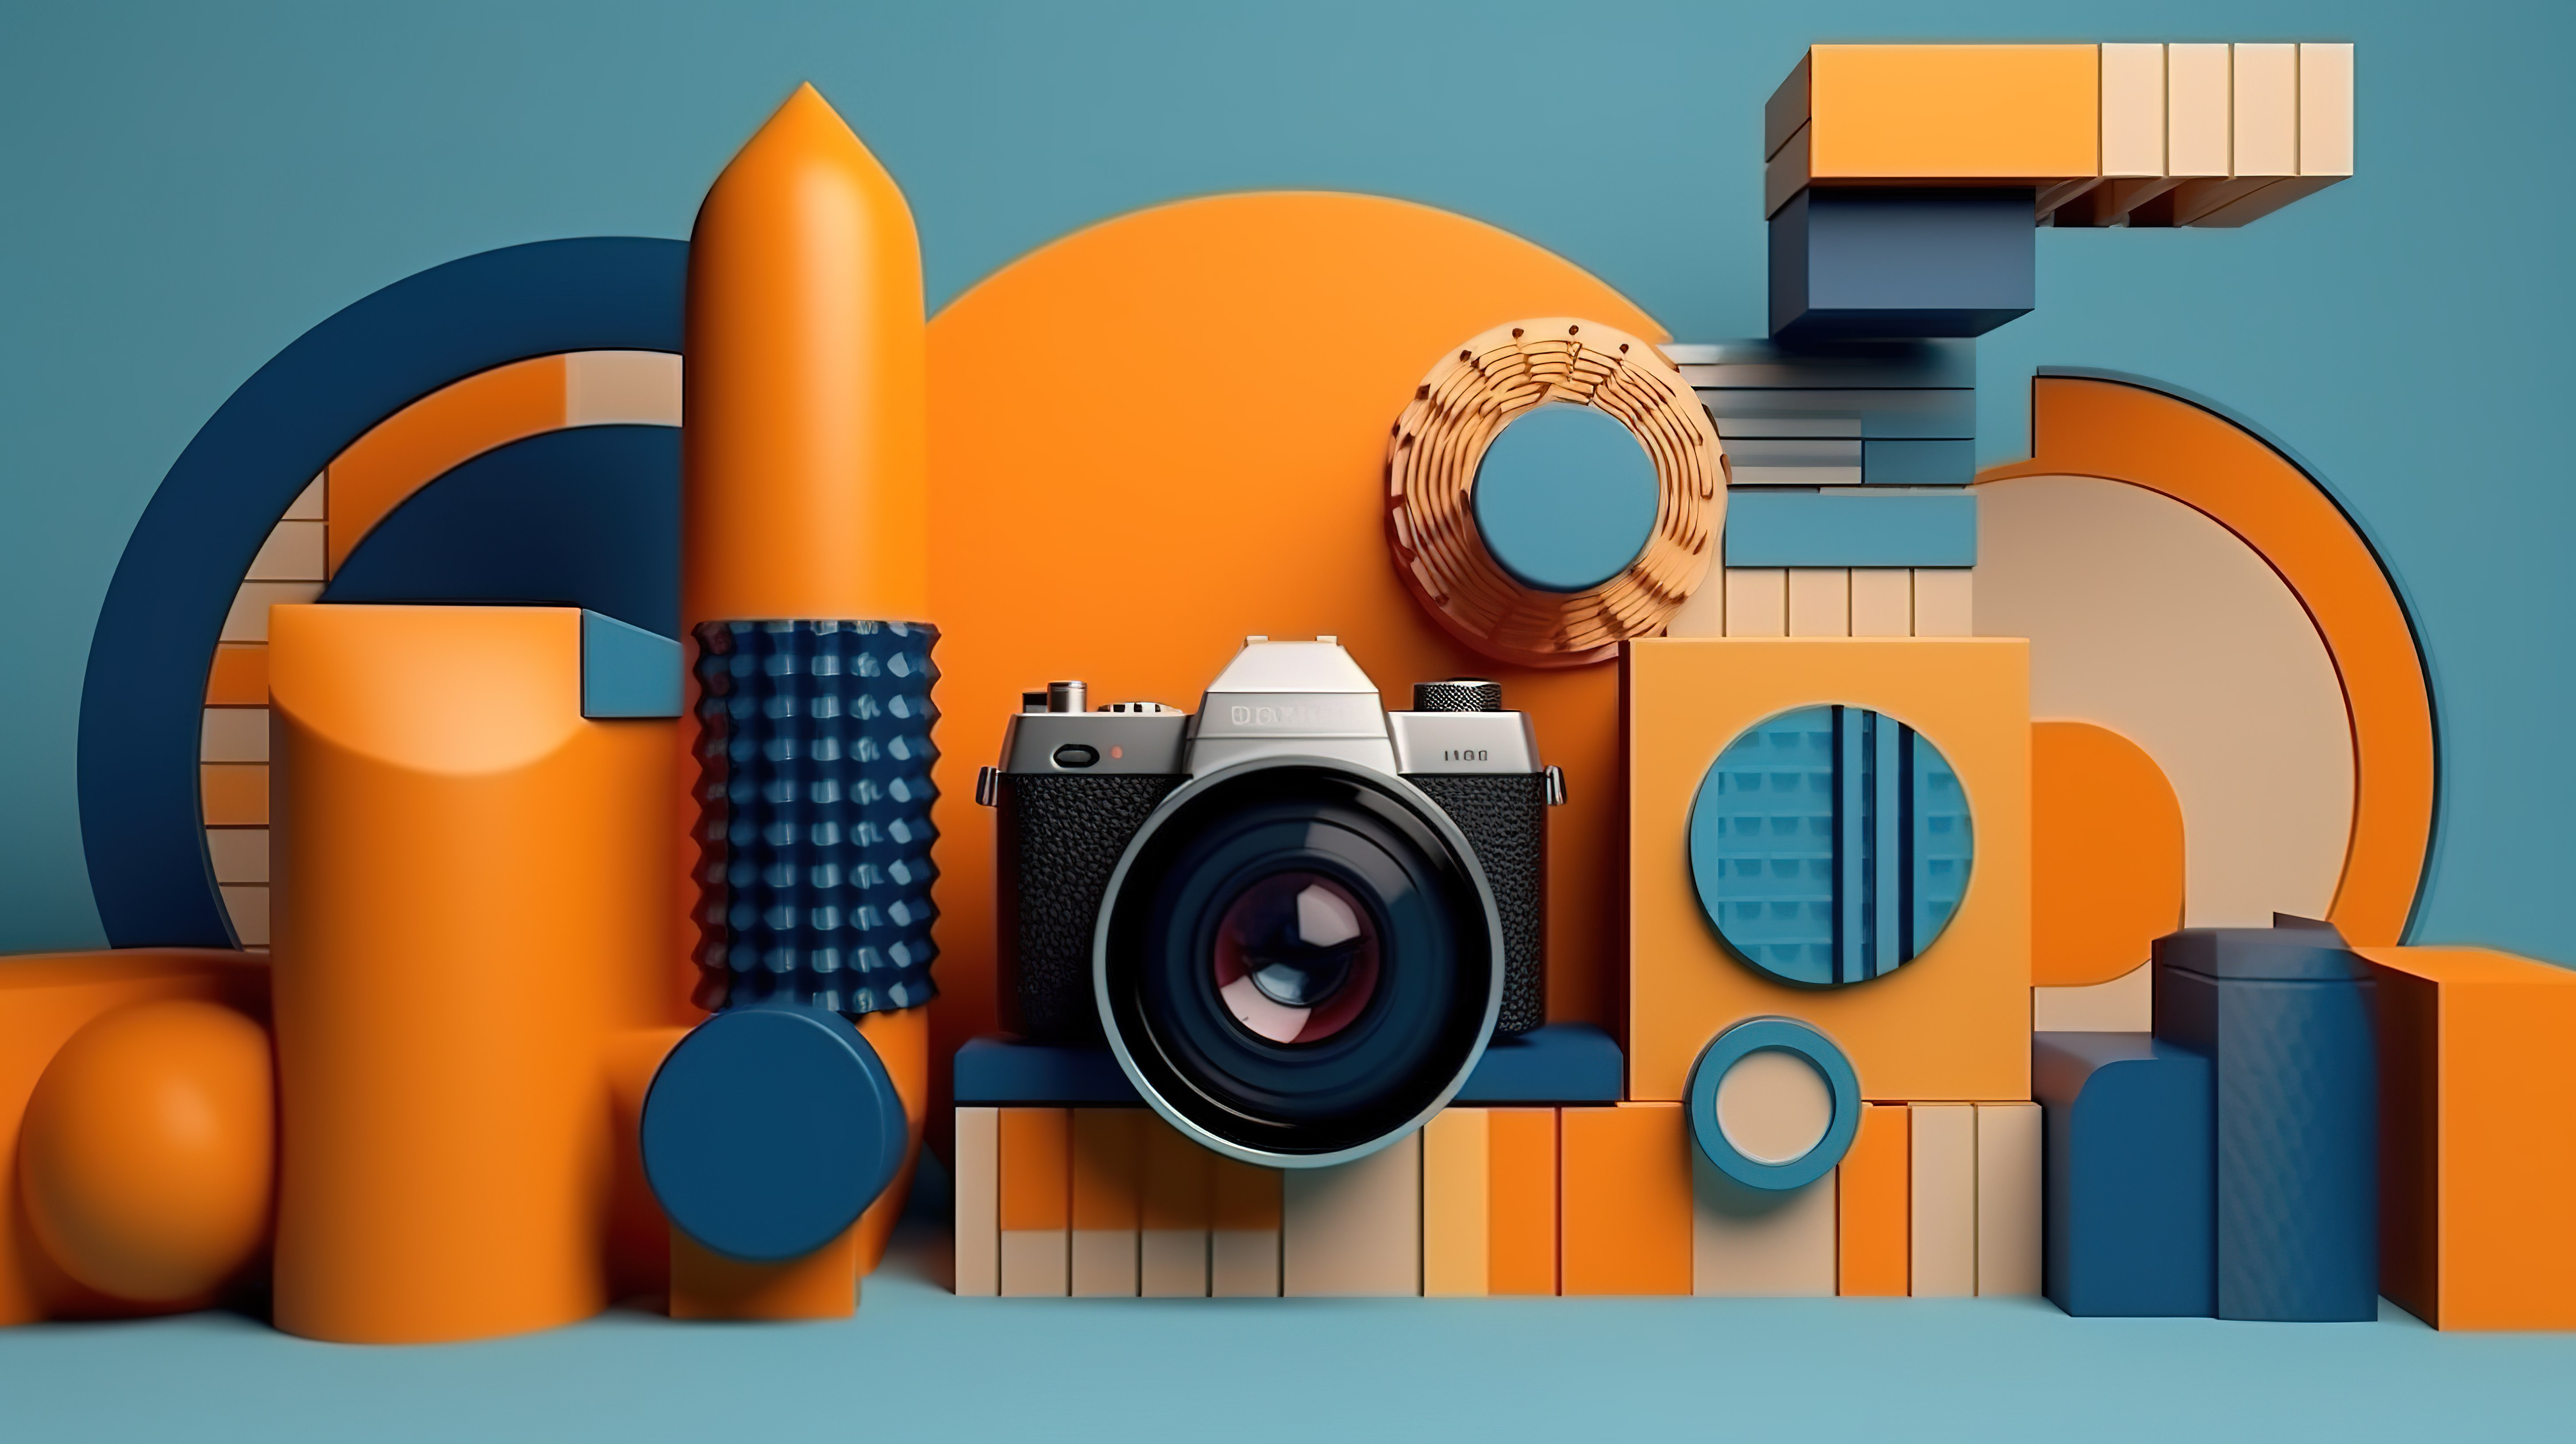 通过 3D 渲染中所示的相机镜头组成的橙色蓝色色调的几何孟菲斯风格形状图片